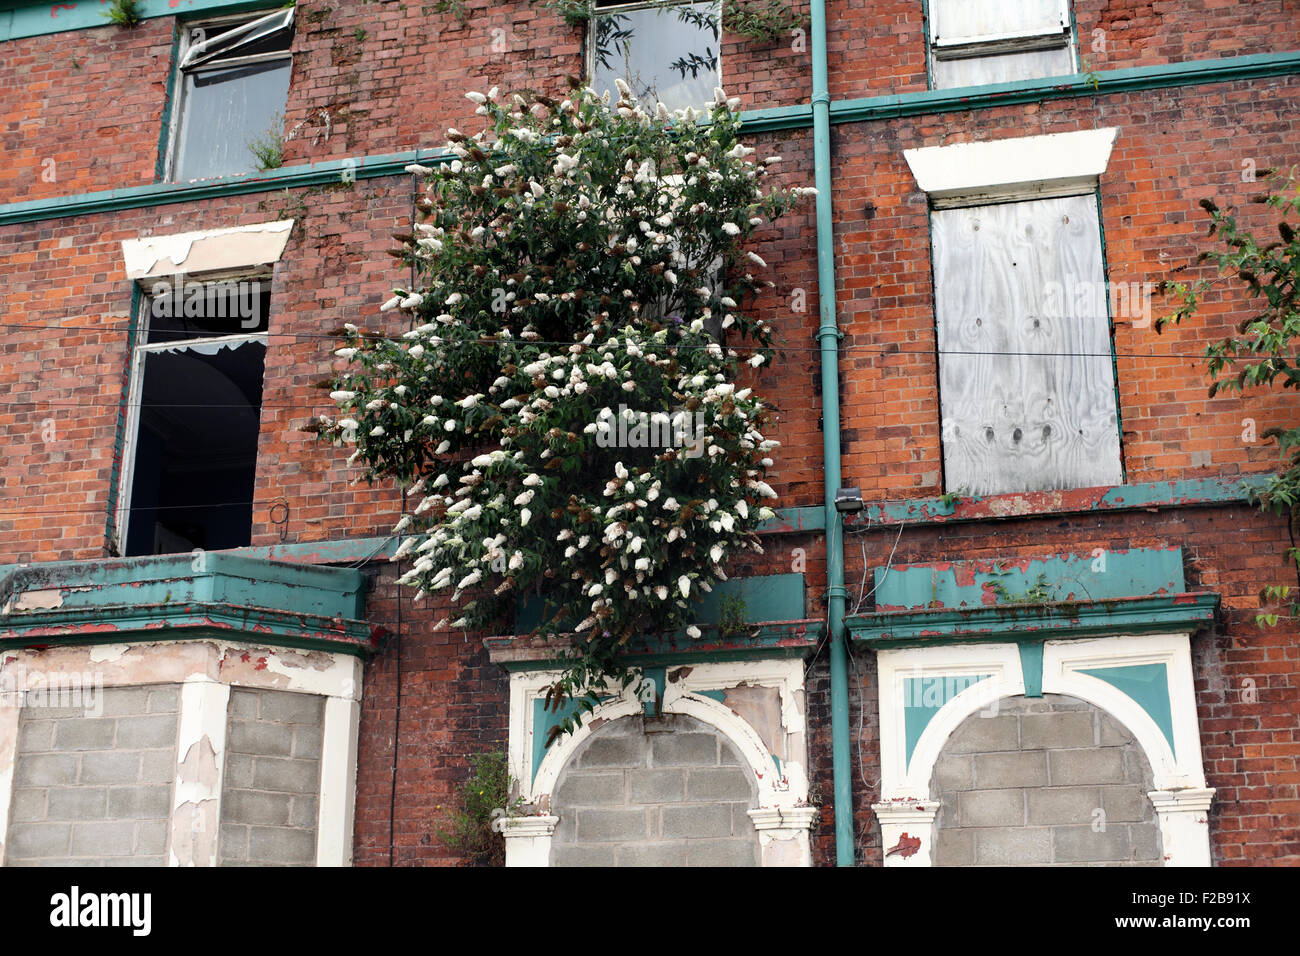 Buddleia blanc émergeant d'une aperçu de bâtiment désaffecté, Hawthorne Road, Liverpool. Banque D'Images